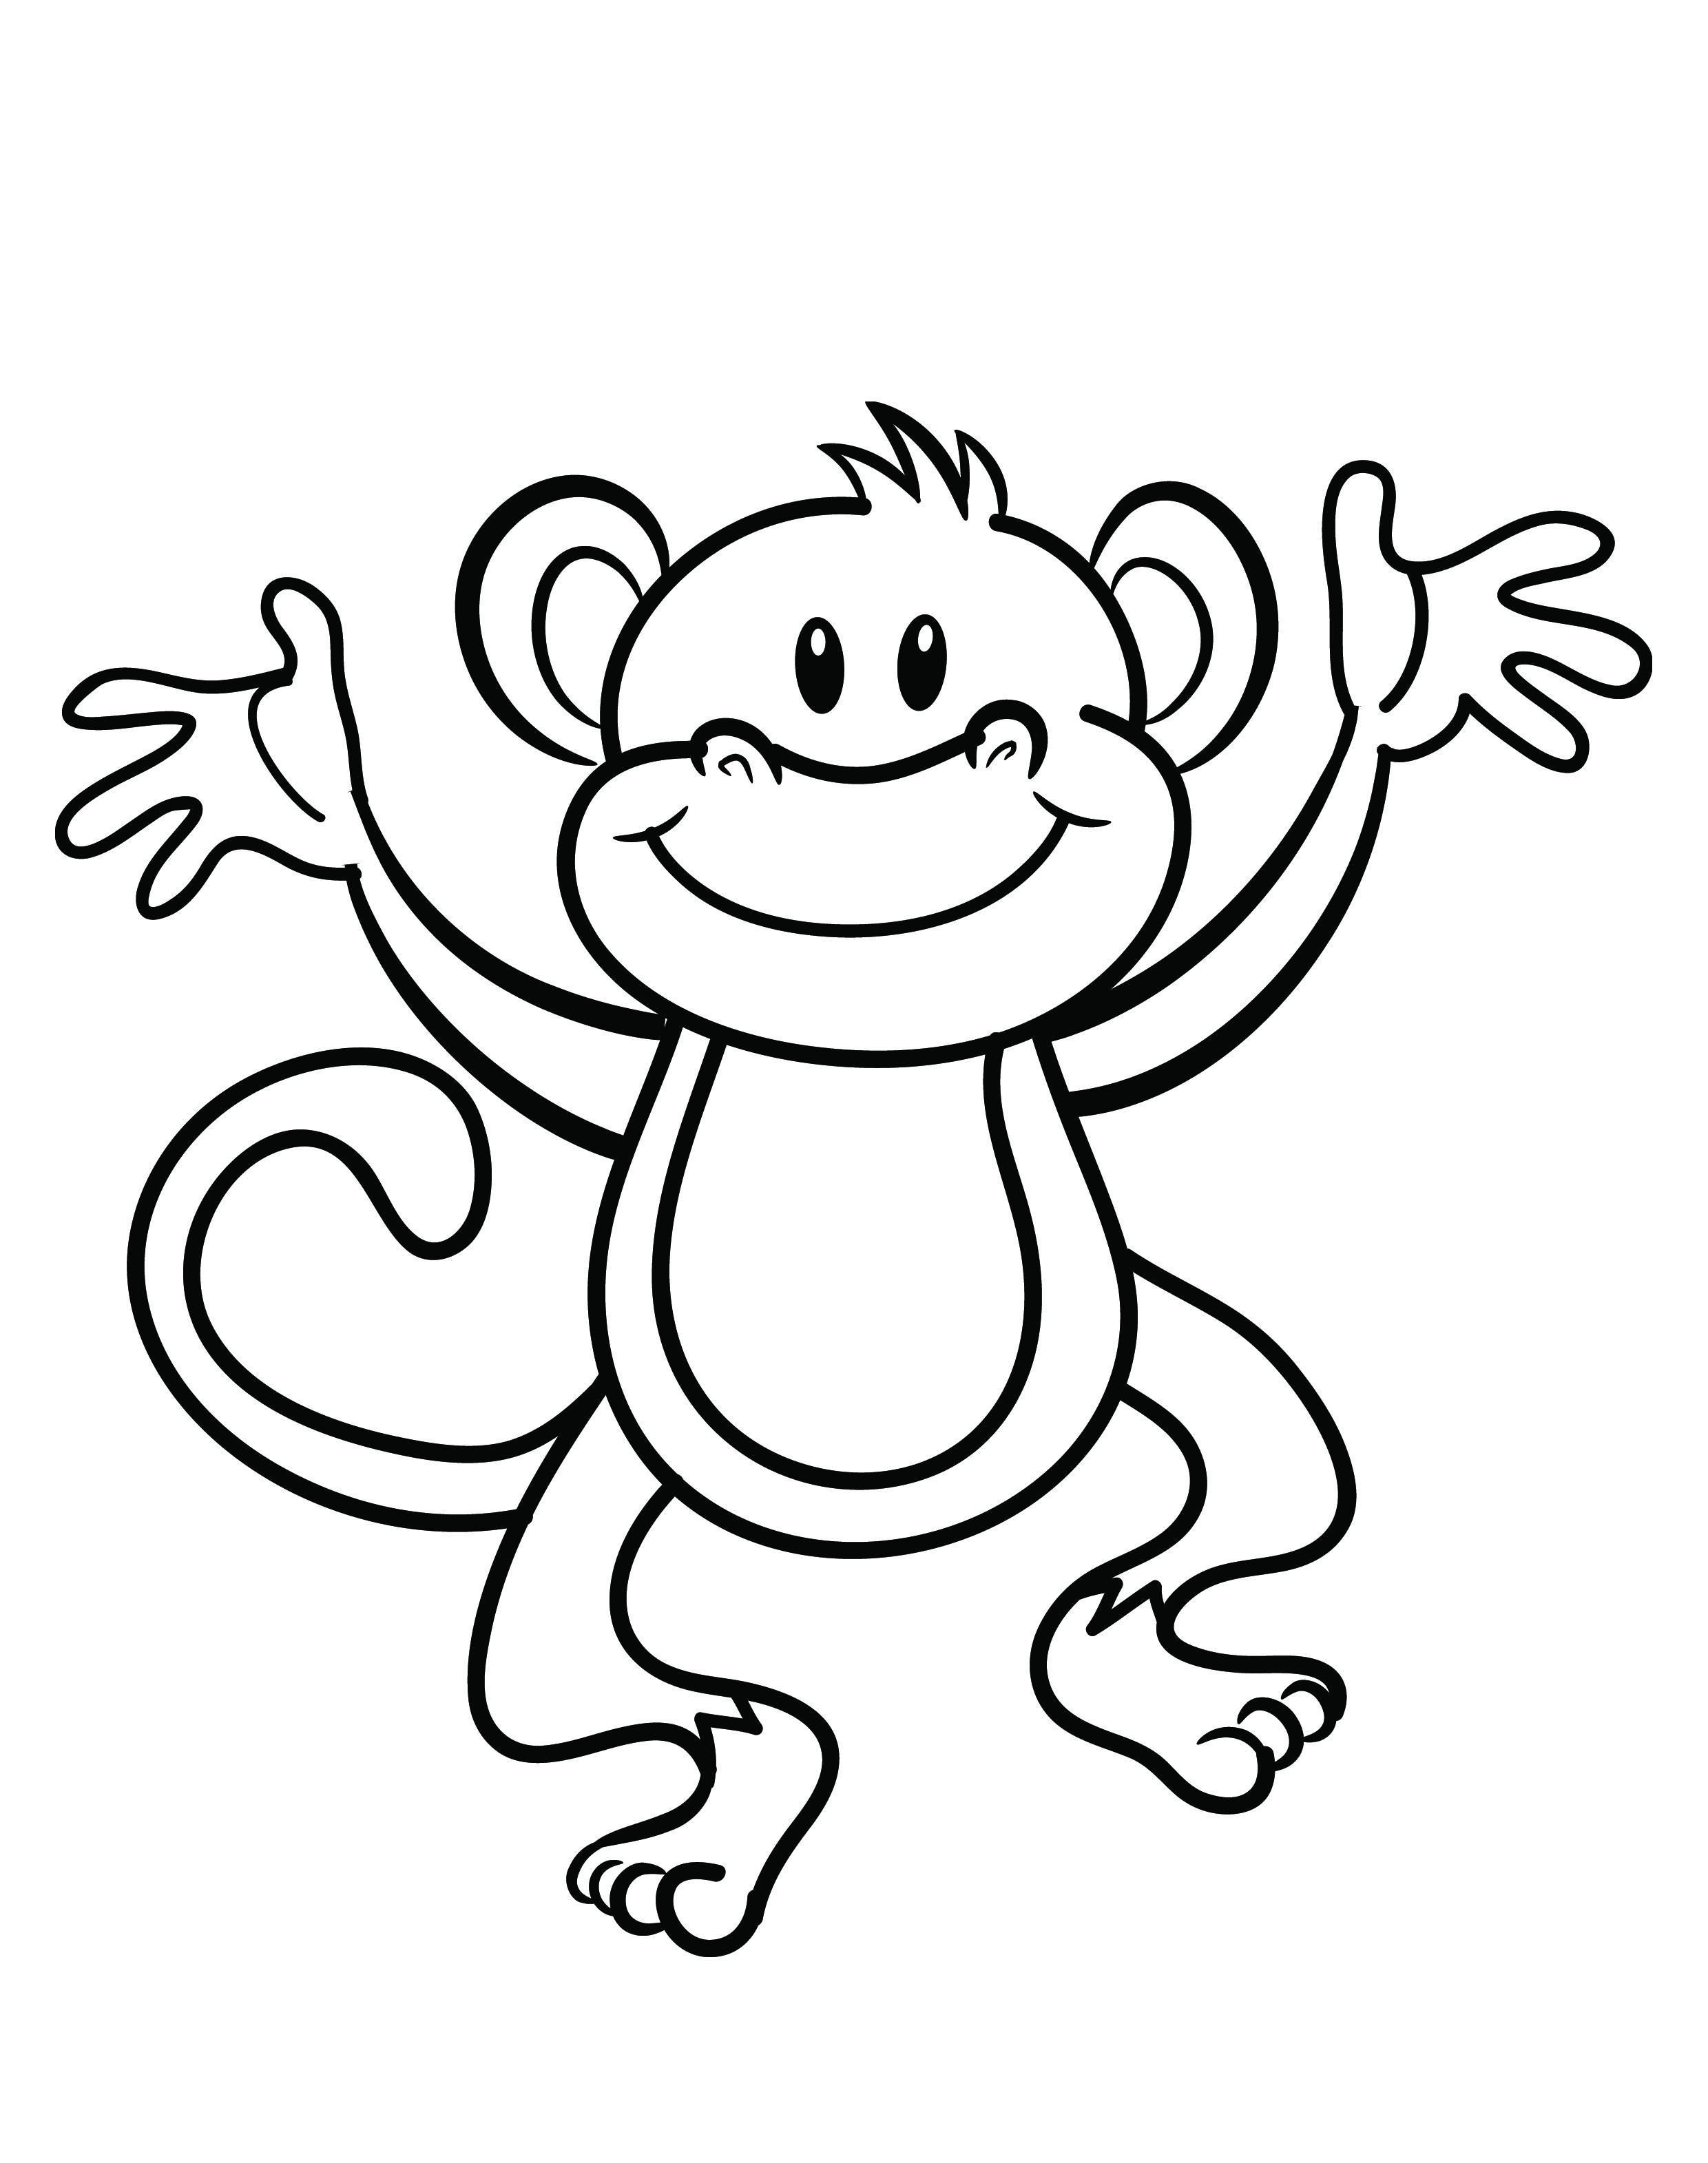 Free Printable Monkey Coloring Page | Cj 1St Birthday | Pinterest - Free Printable Monkey Coloring Sheets